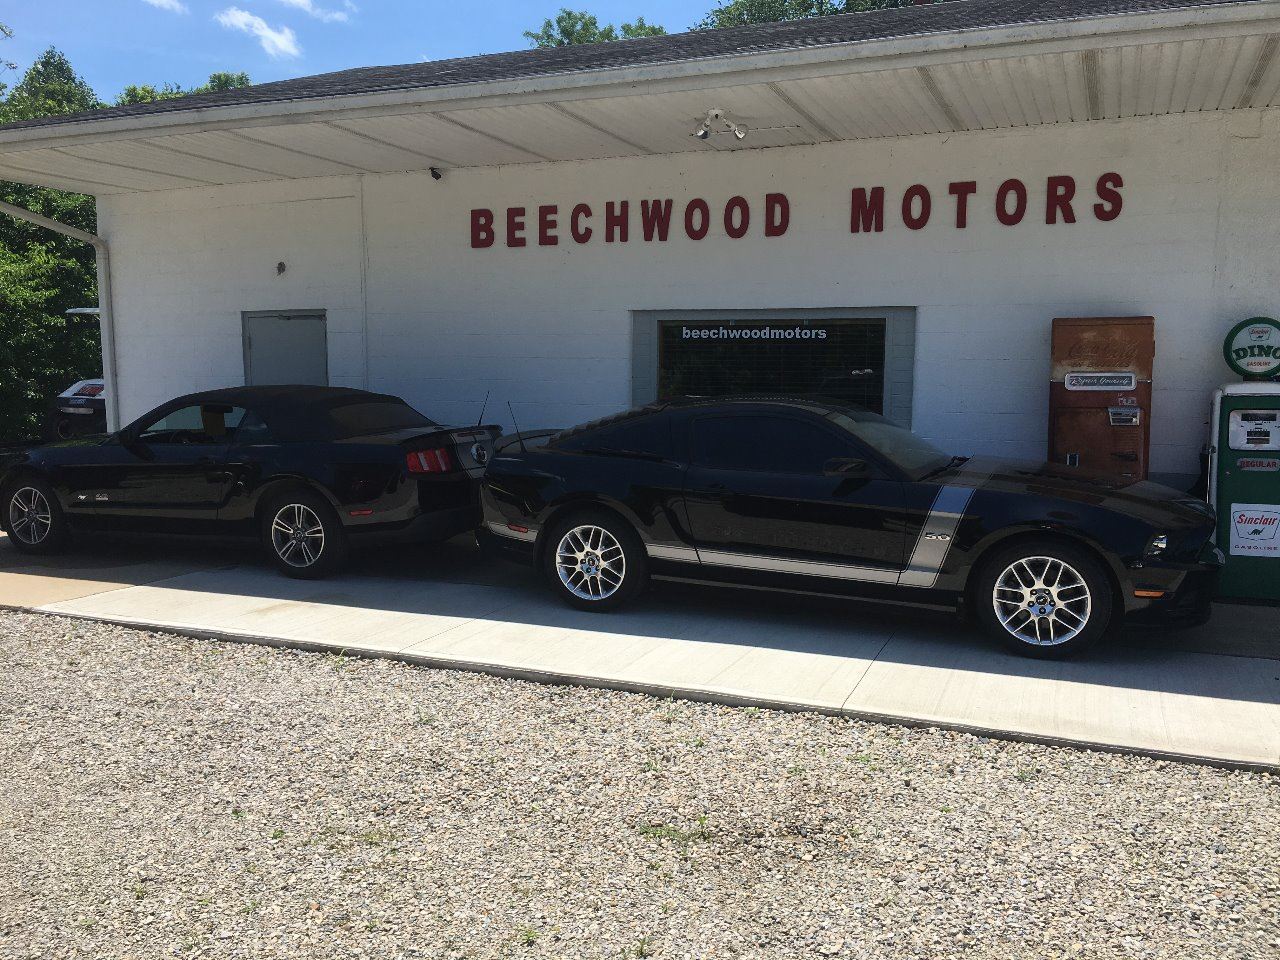 Beechwood Motors